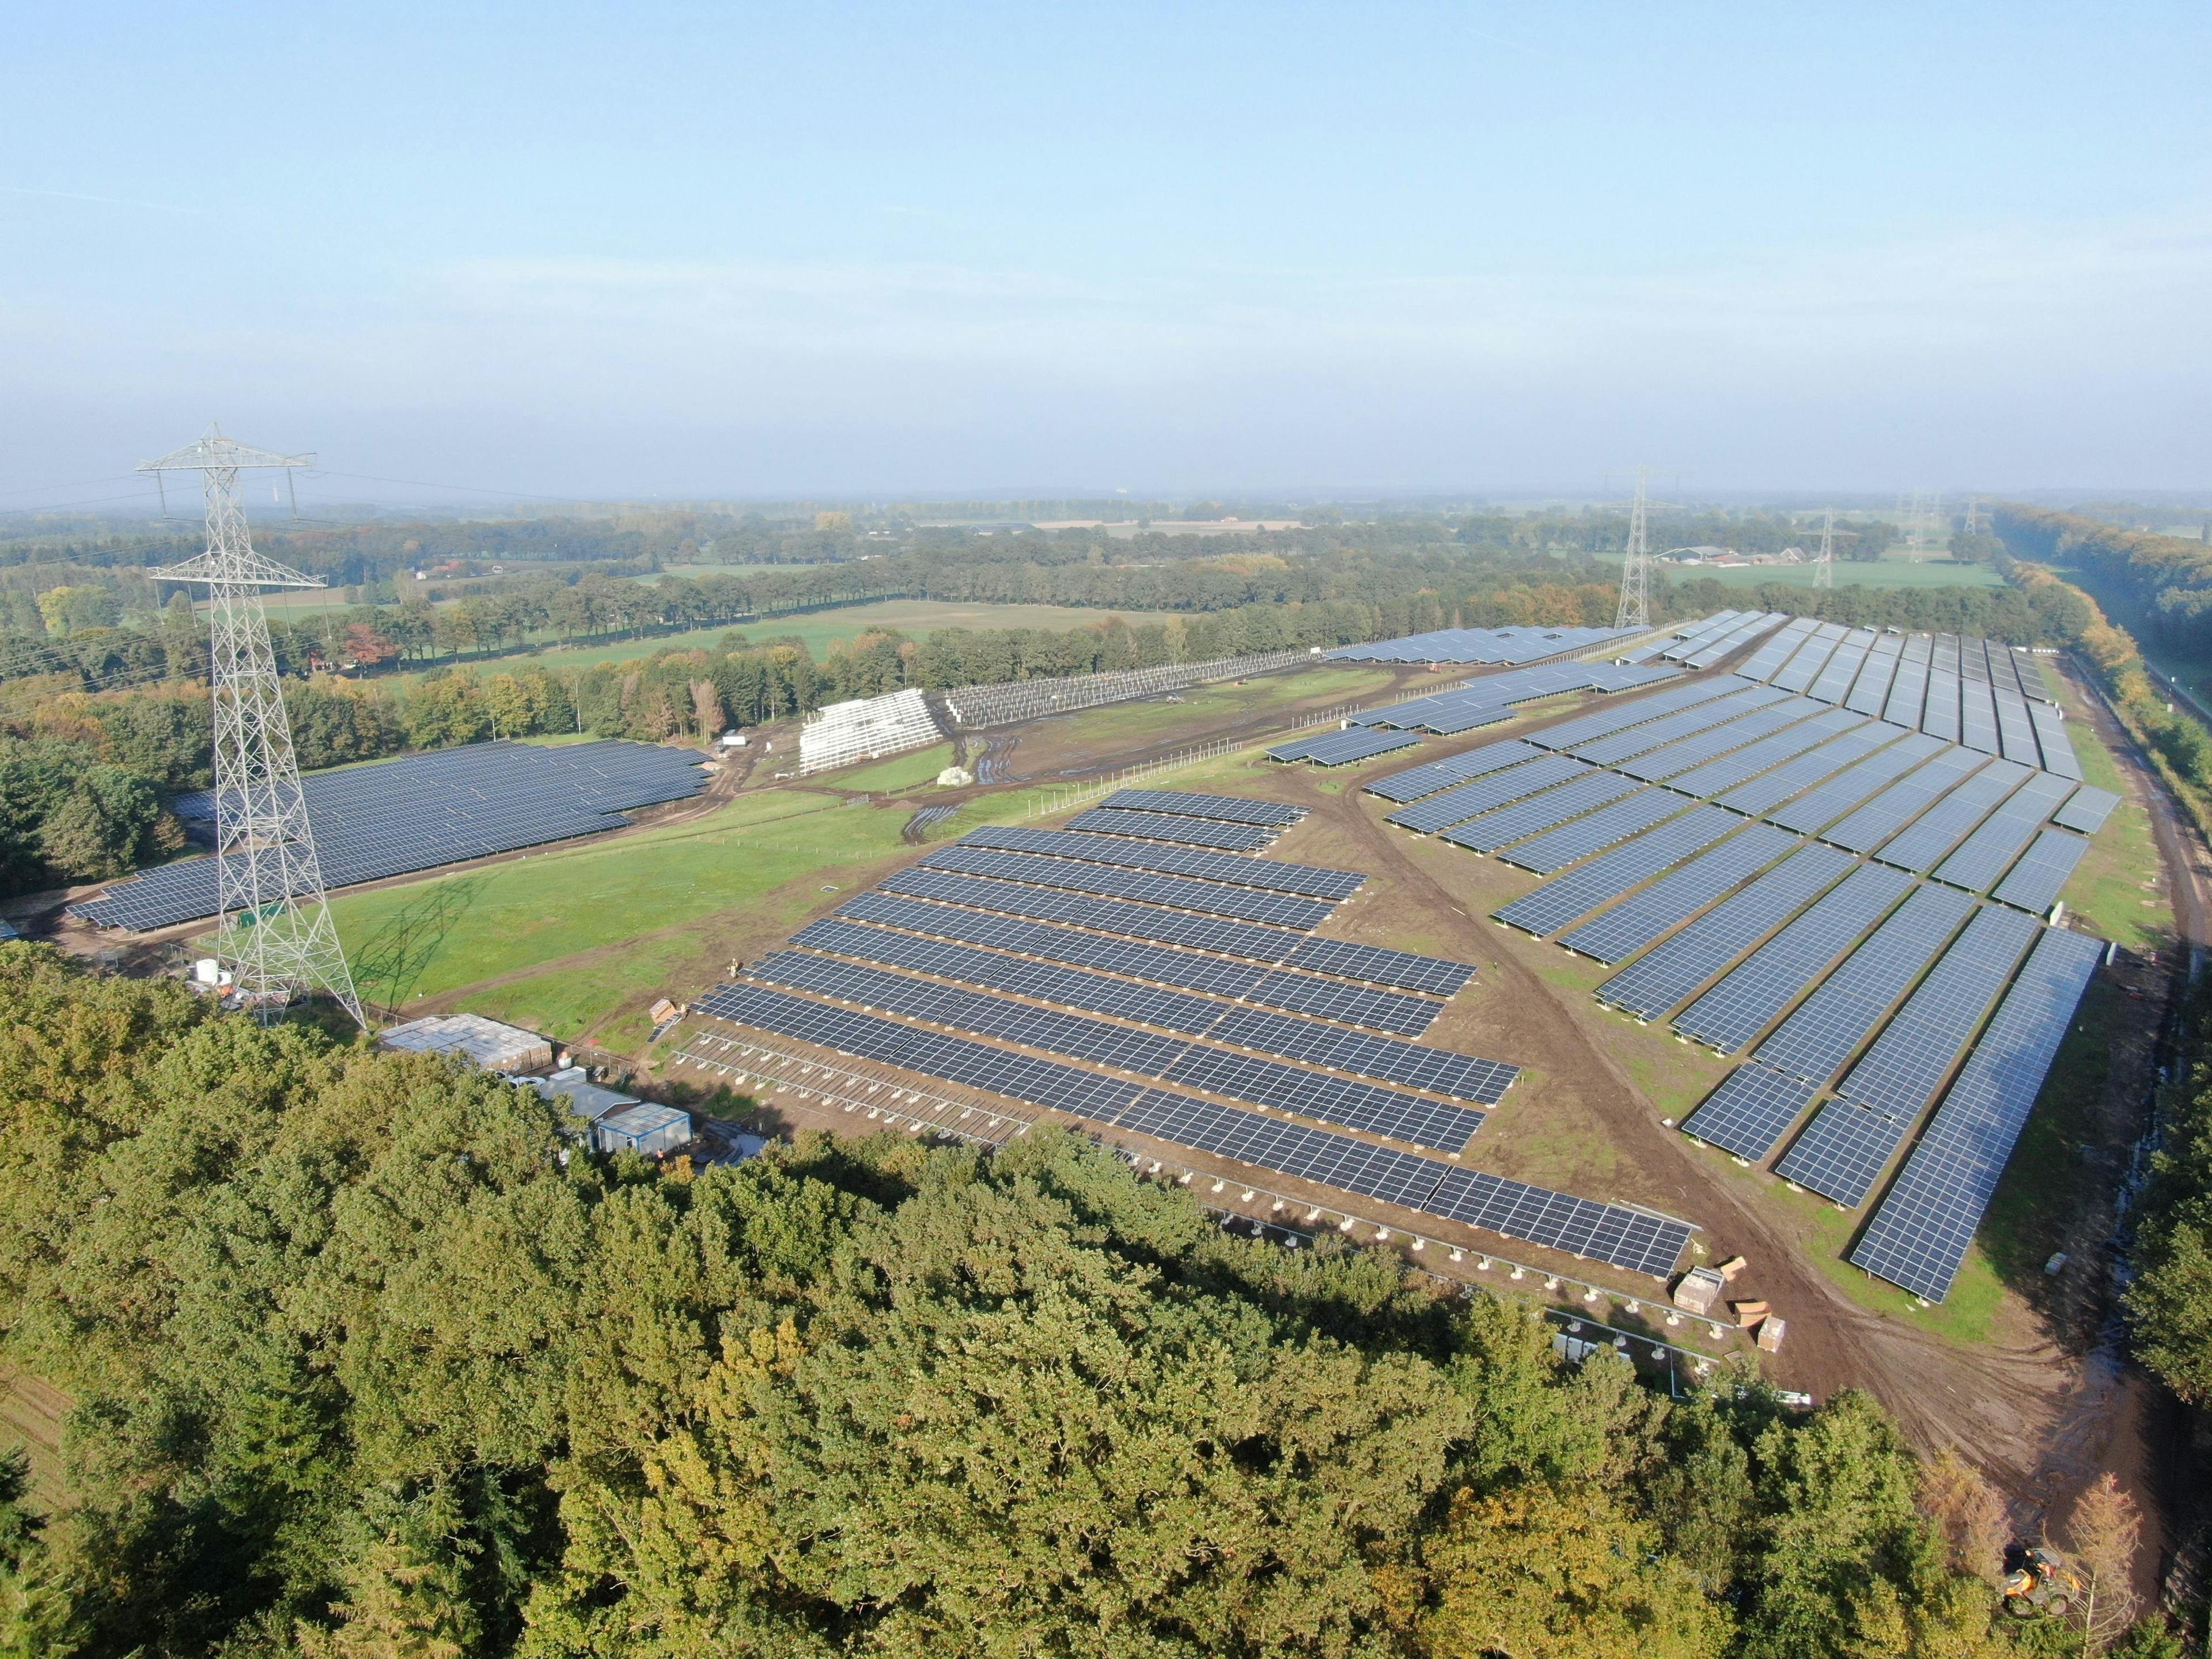 Lochem freefield project in the Netherlands, taken by drone